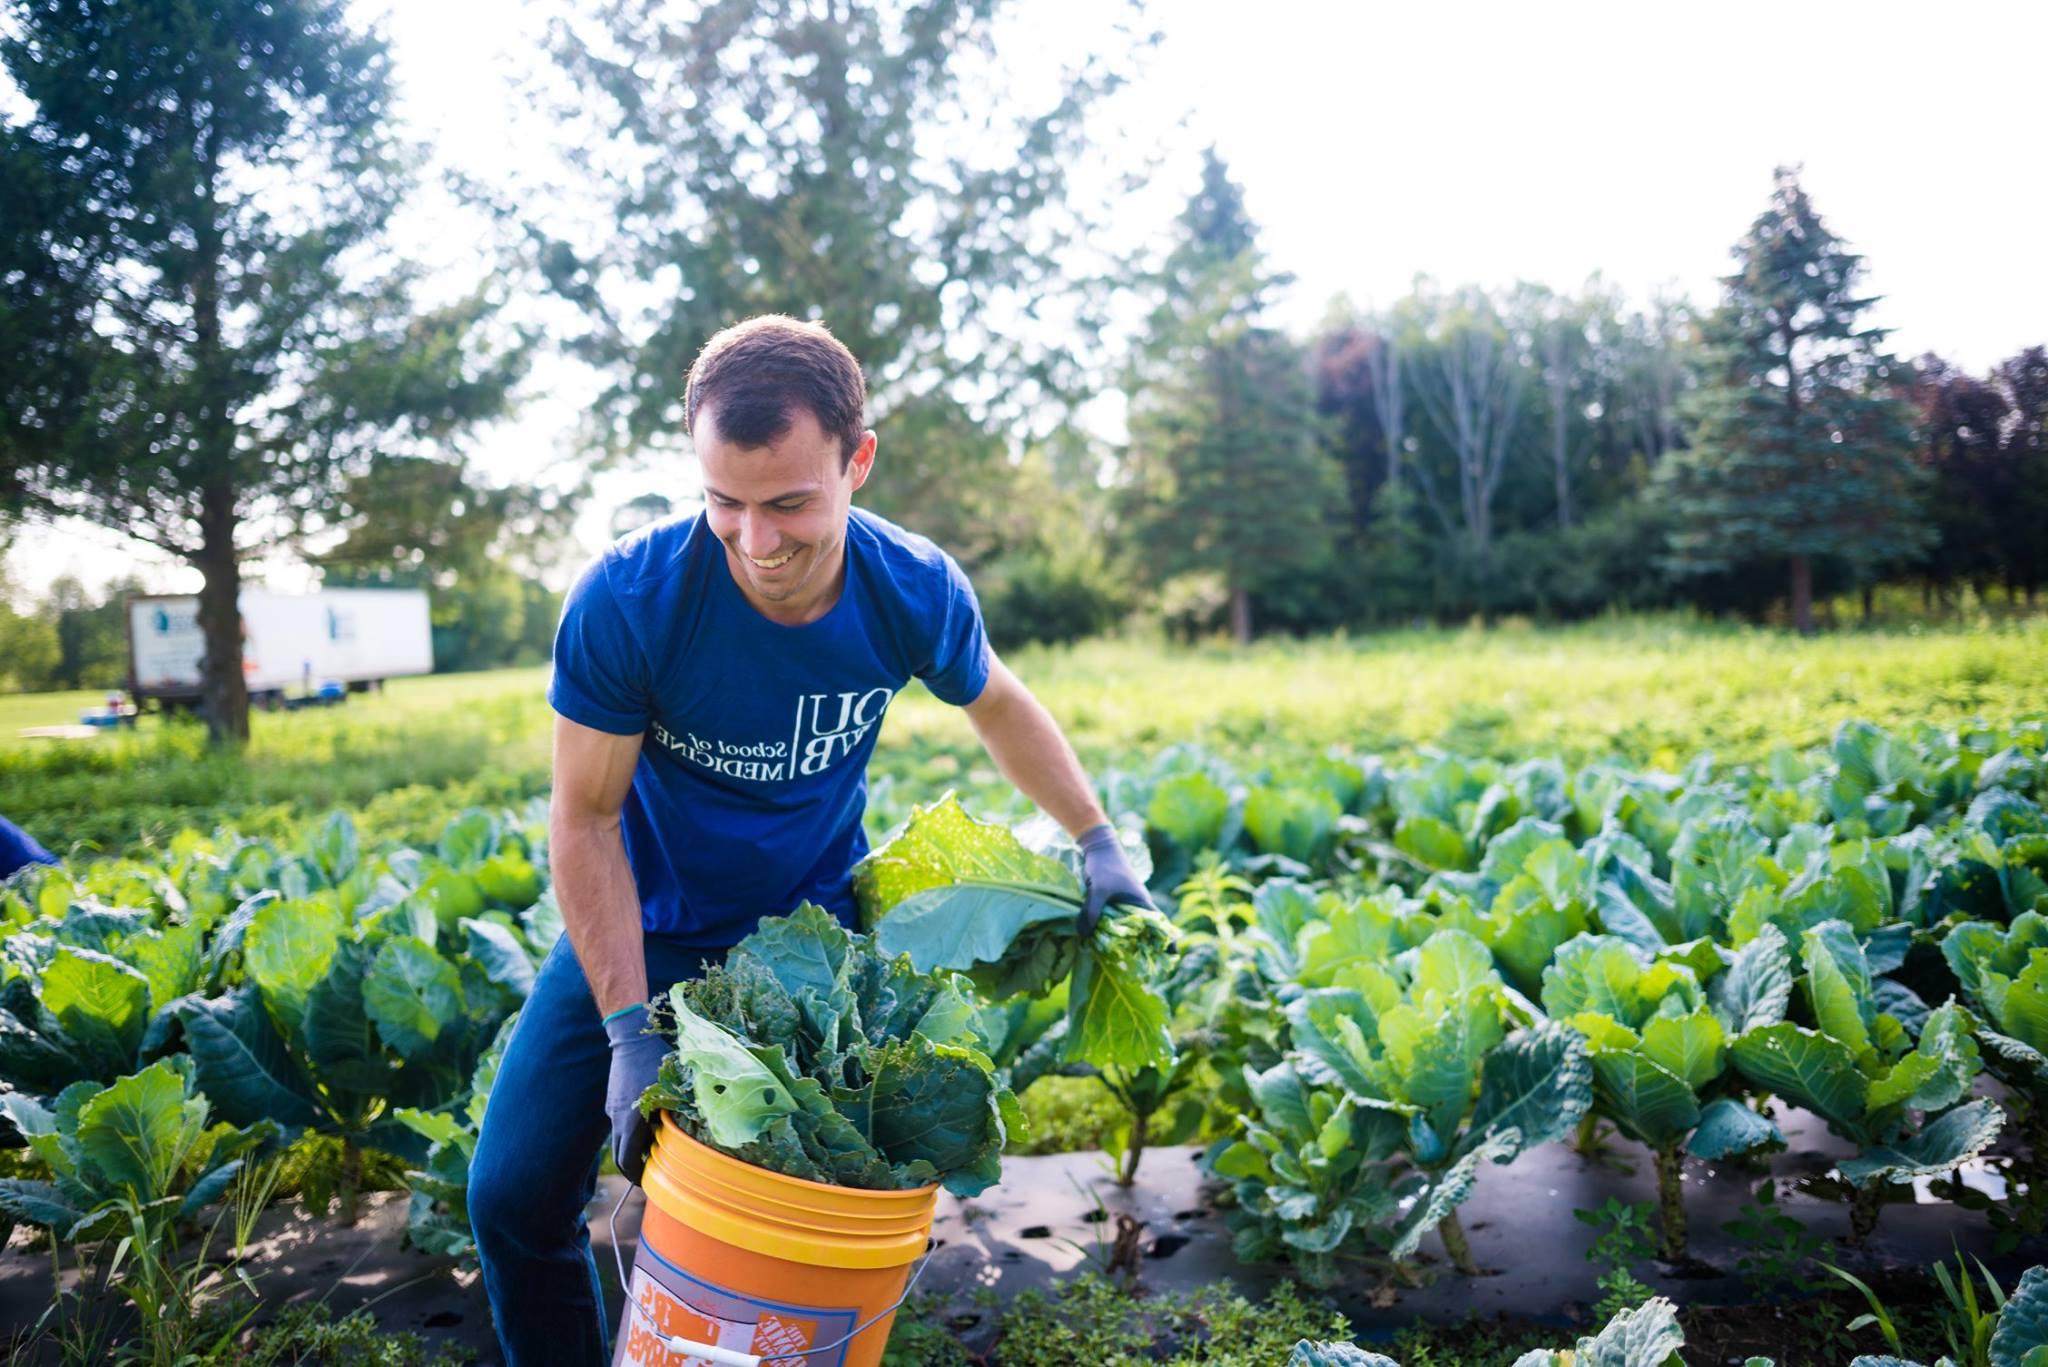 一位牛津大学的学生在“遗忘的收获”农场做志愿者. 他提着一桶青菜穿过田野.